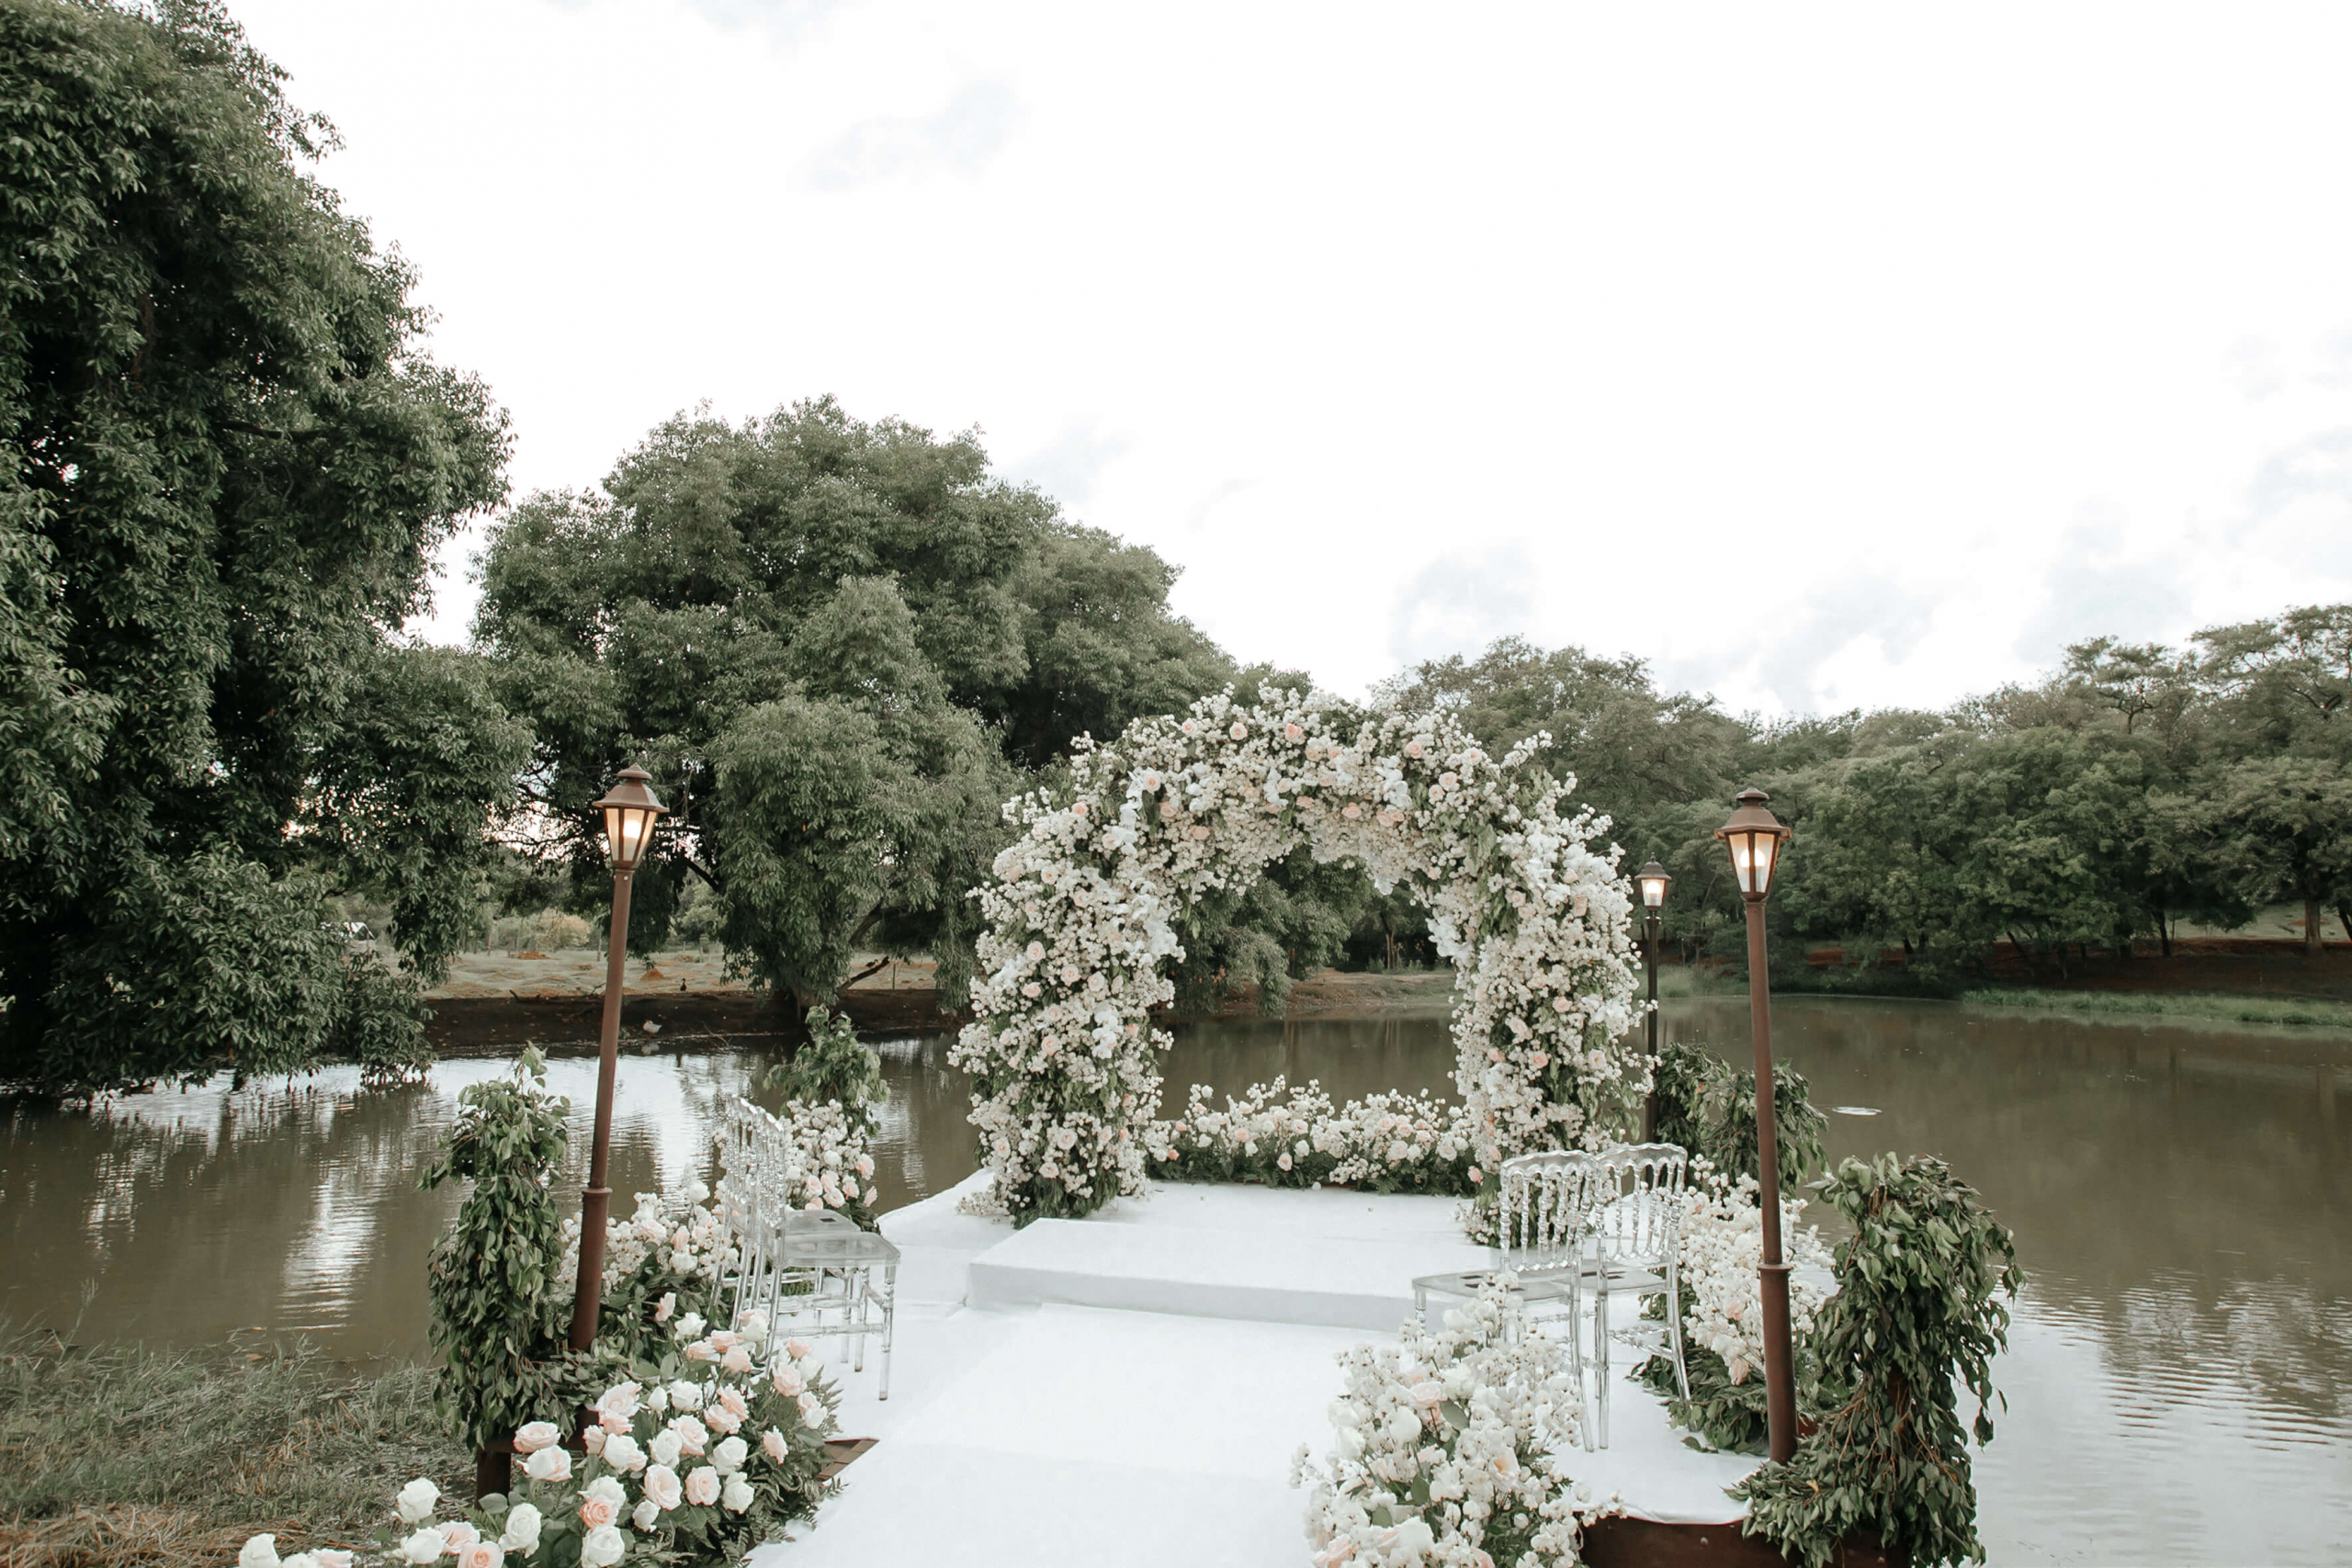 Casamento com cerimônia all white e decoração romântica no campo